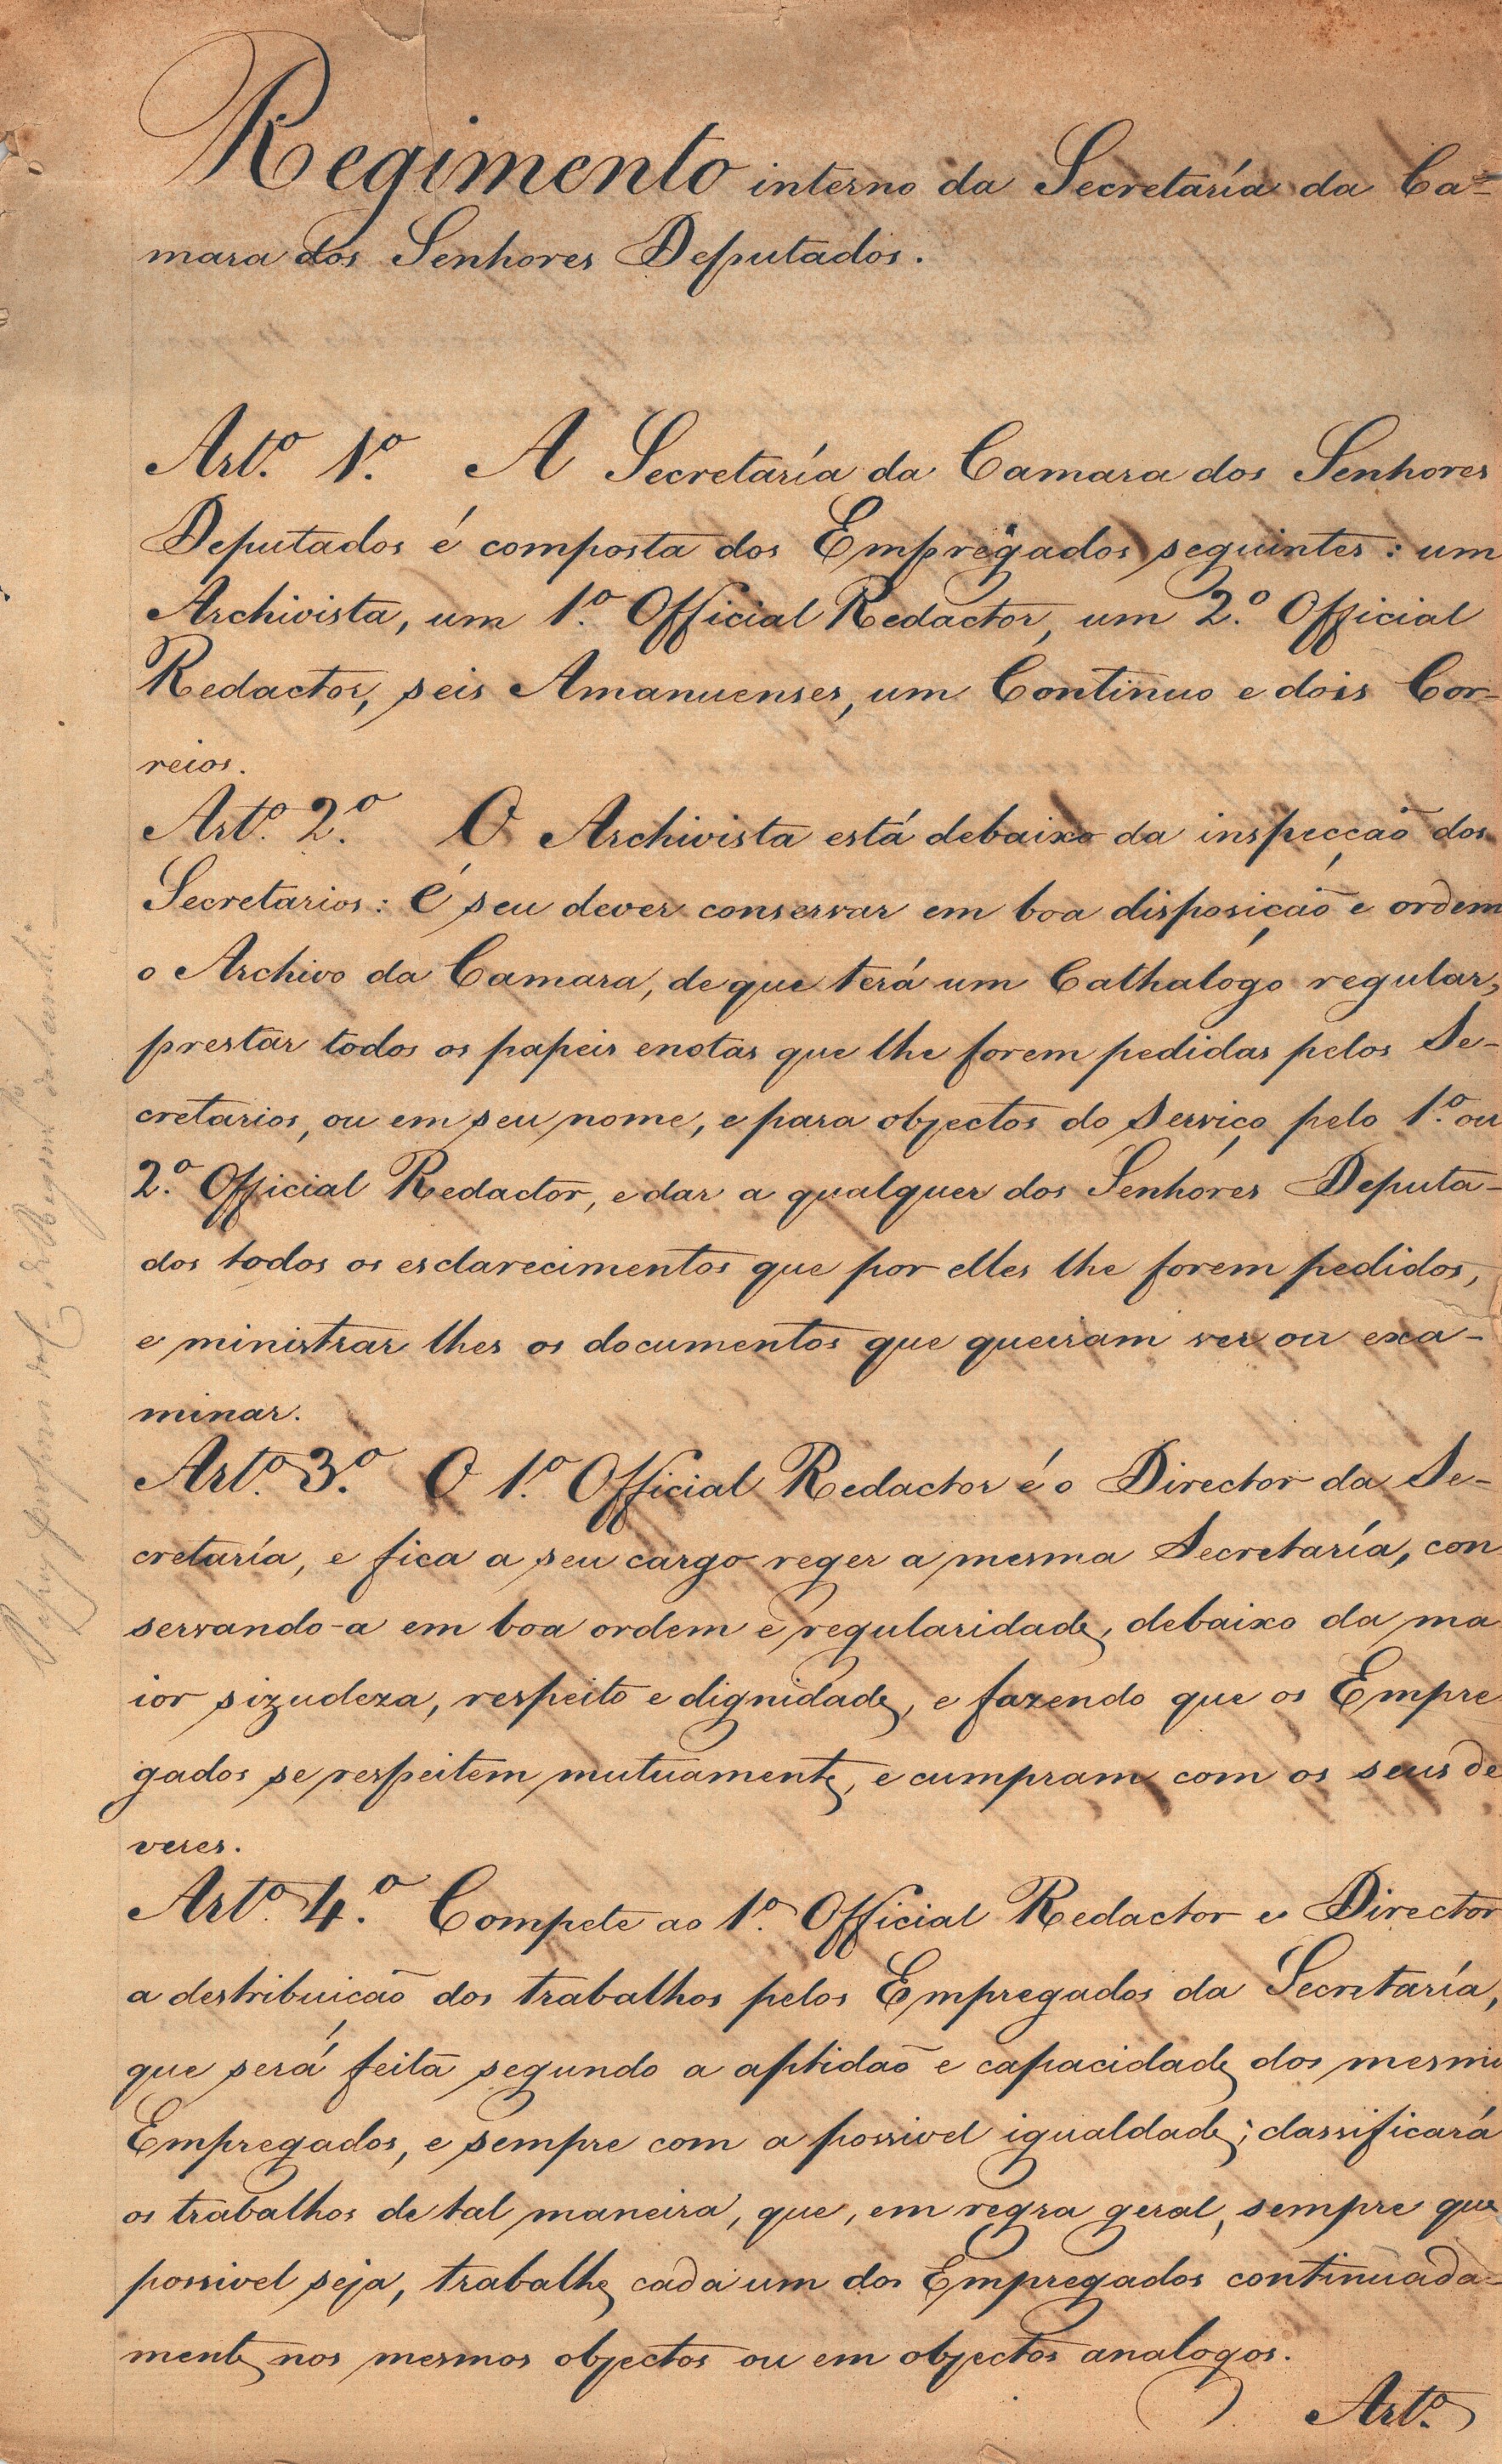 Projeto para Regimento Interno da Secretaria da Câmara dos Deputados. 3 de novembro de 1834. Cota AHP: Secção I/II, cx. 273, mç. 208, doc. 2